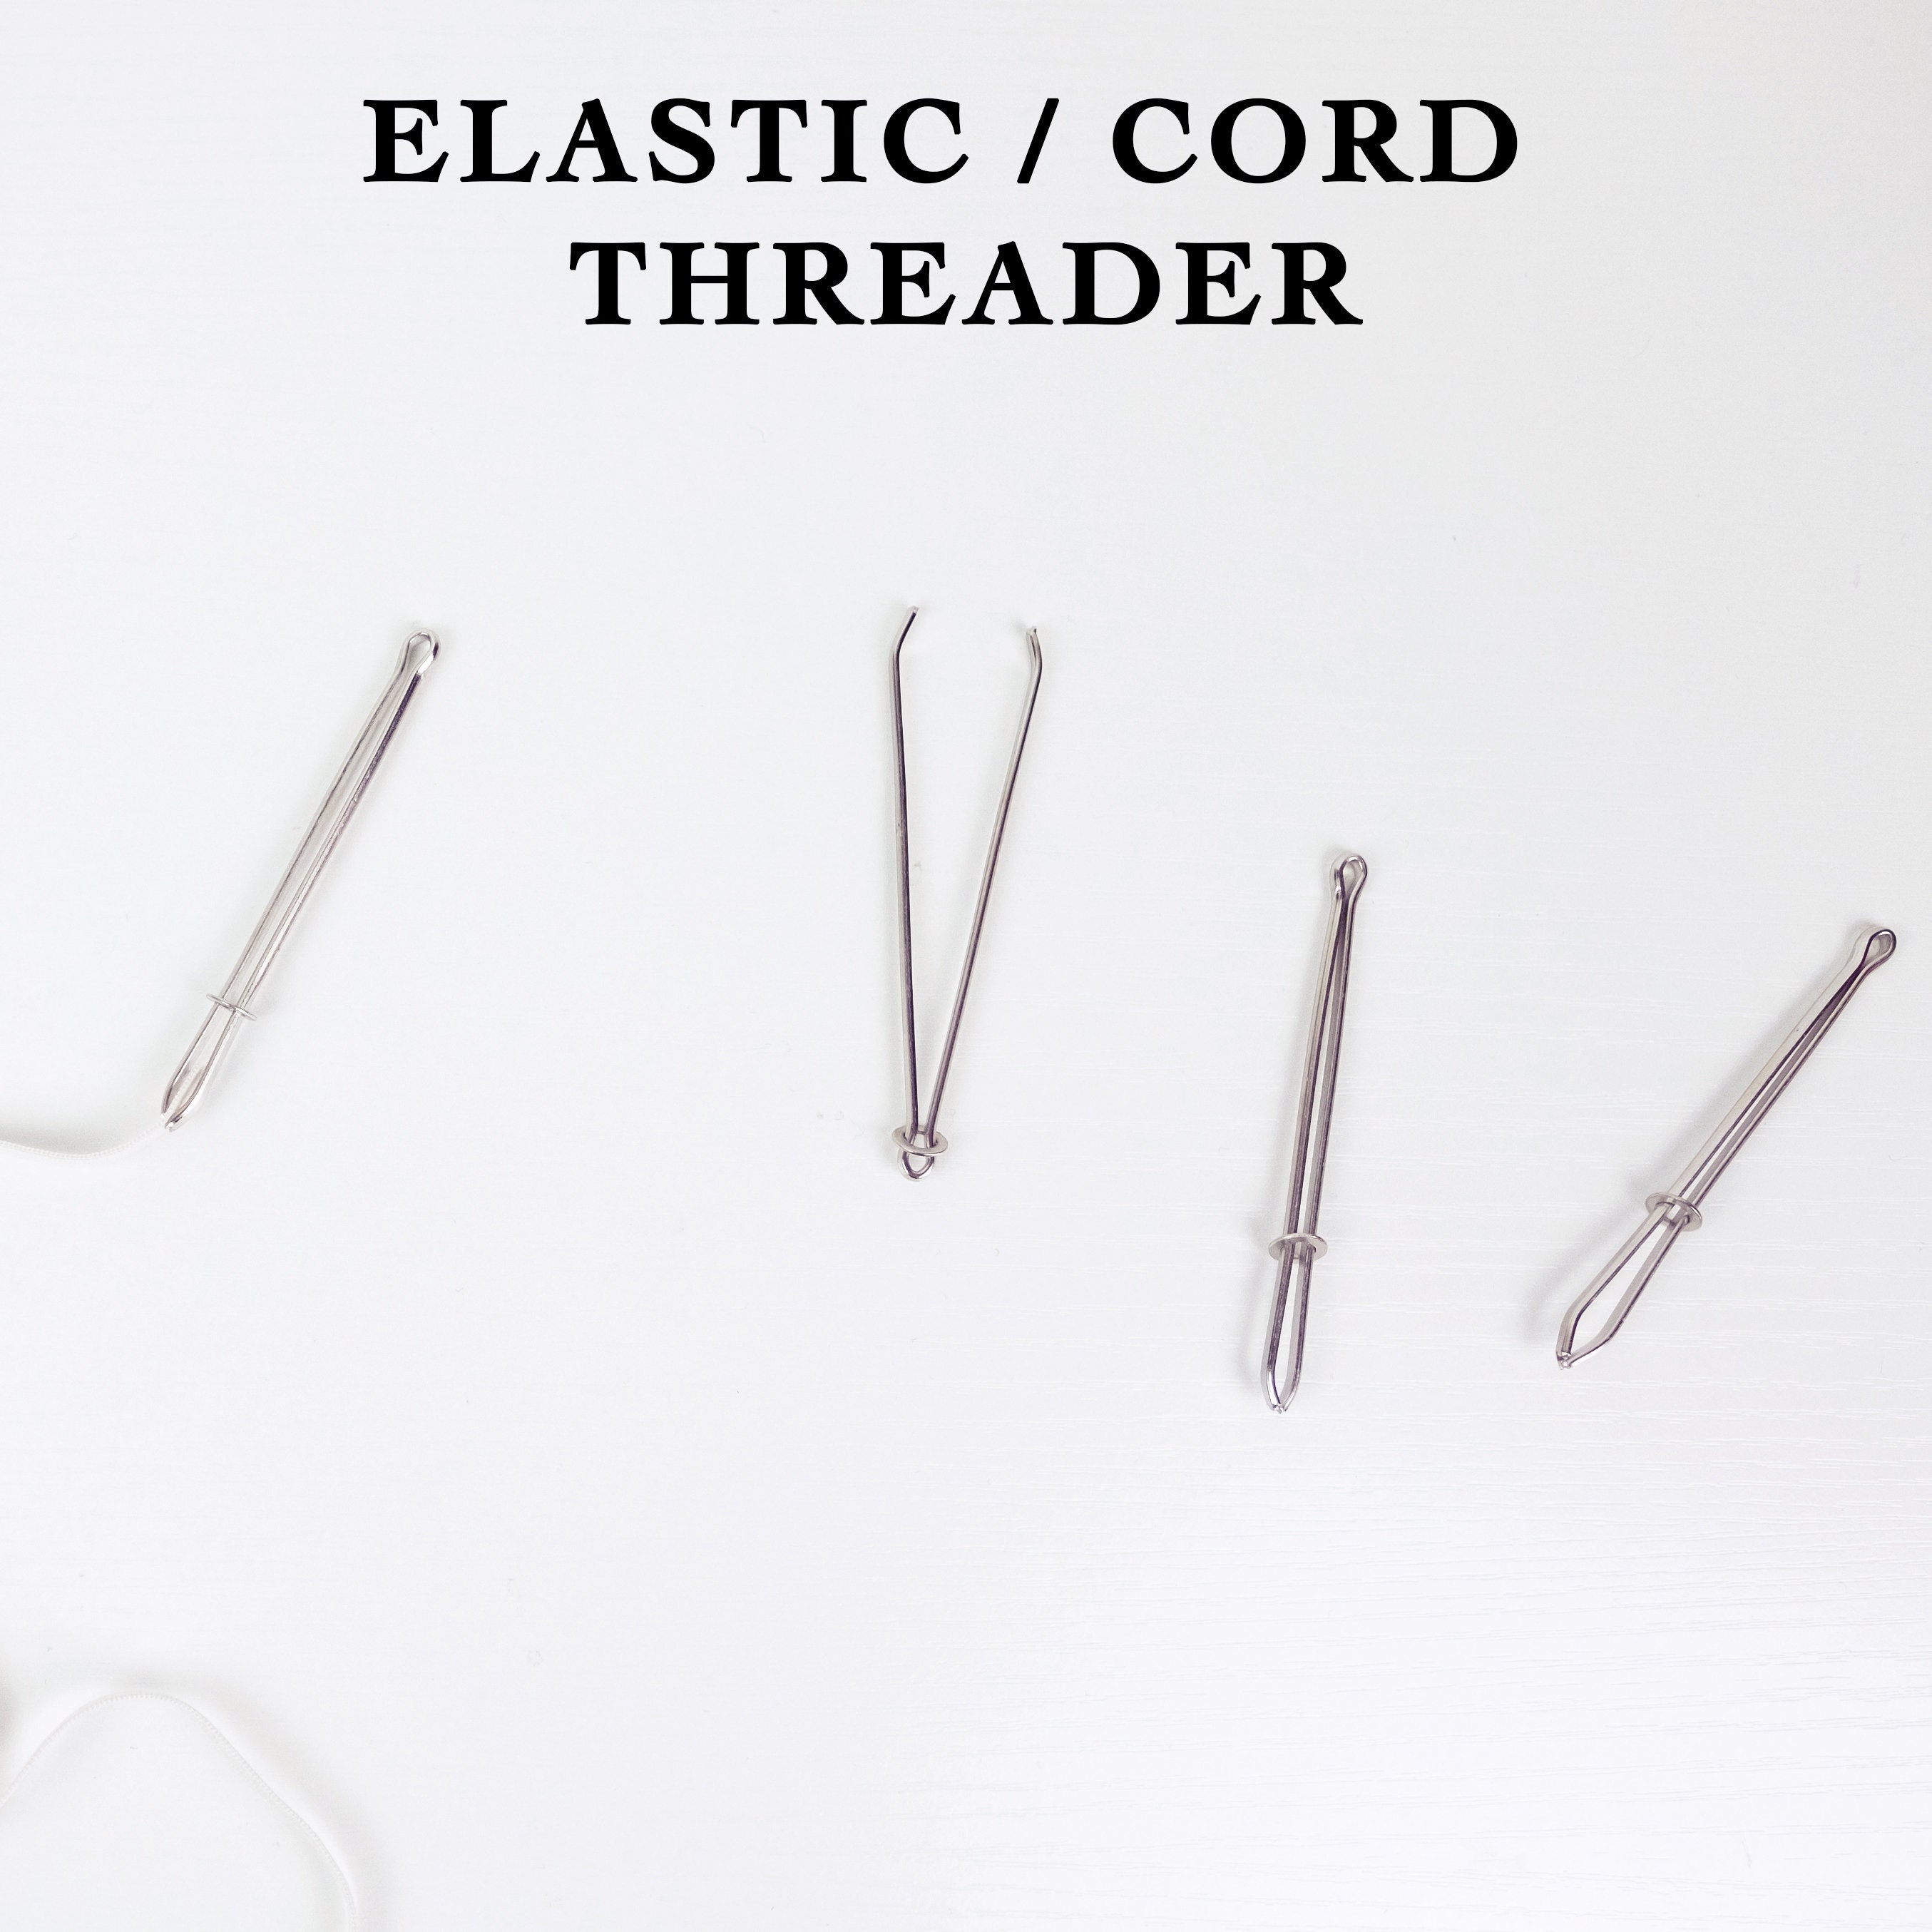 Ccdes Elastics Sewing Threader,Elastic Band Threader,Elastic Cord